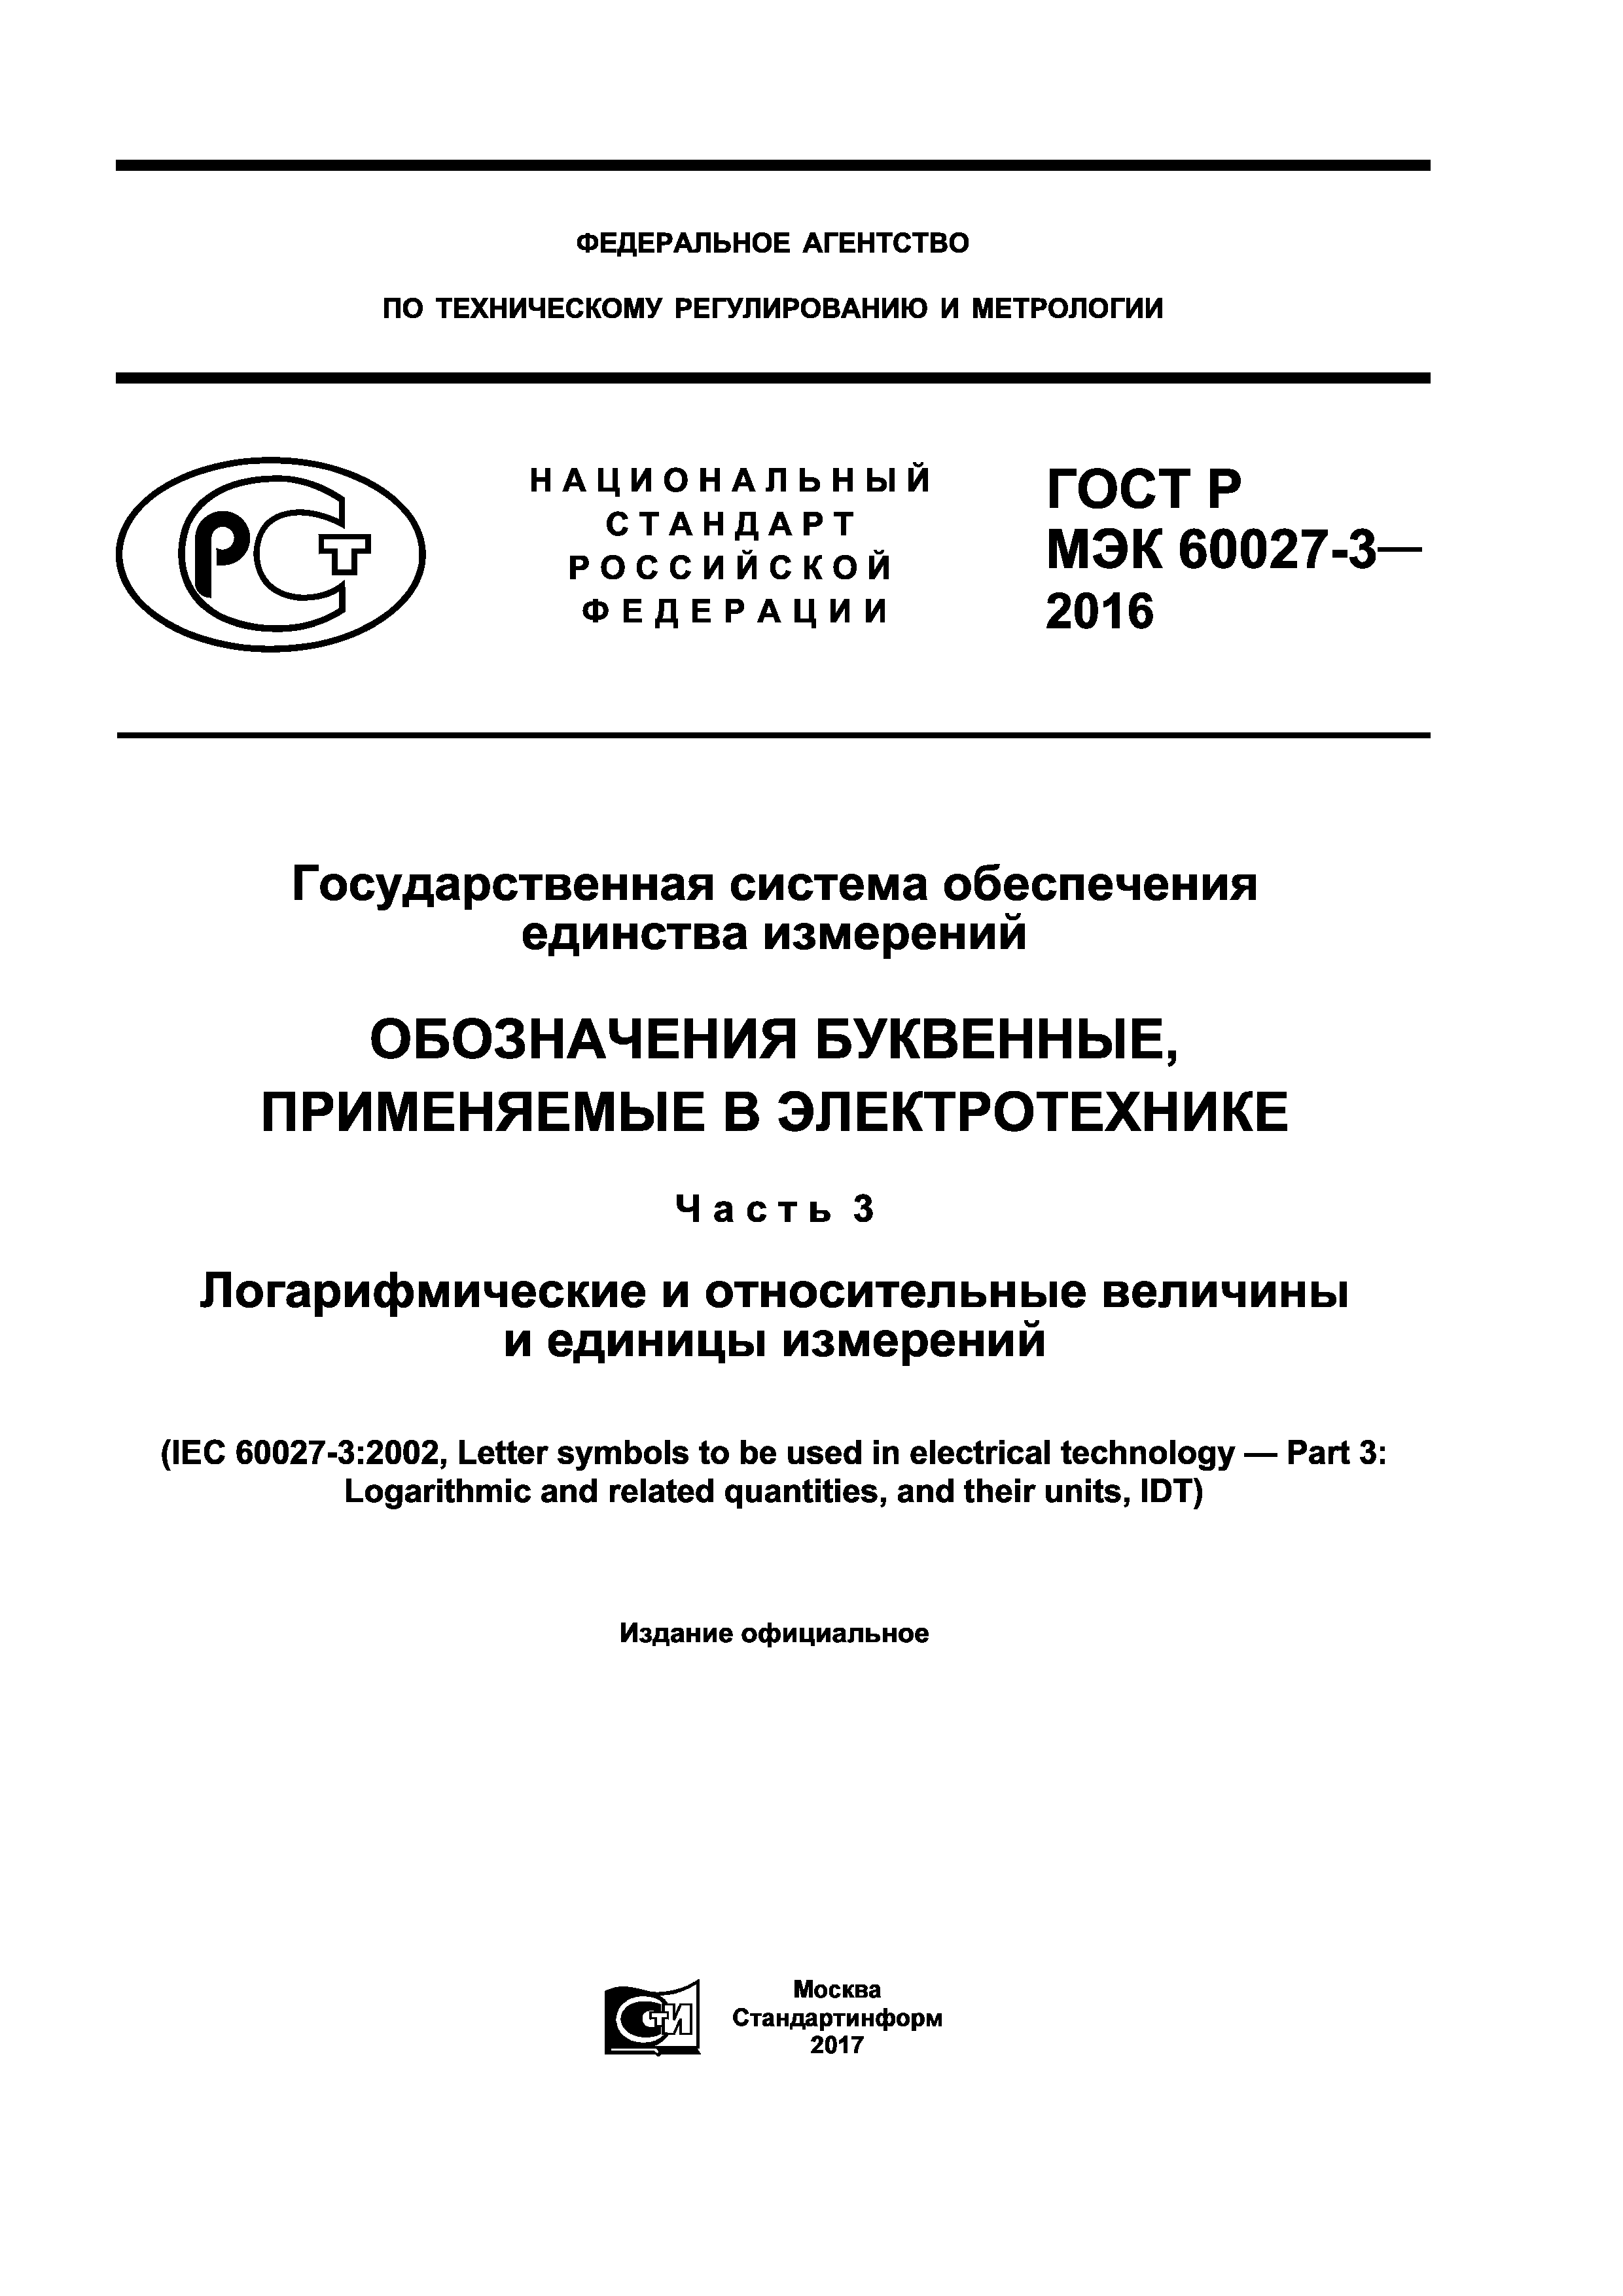 ГОСТ Р МЭК 60027-3-2016